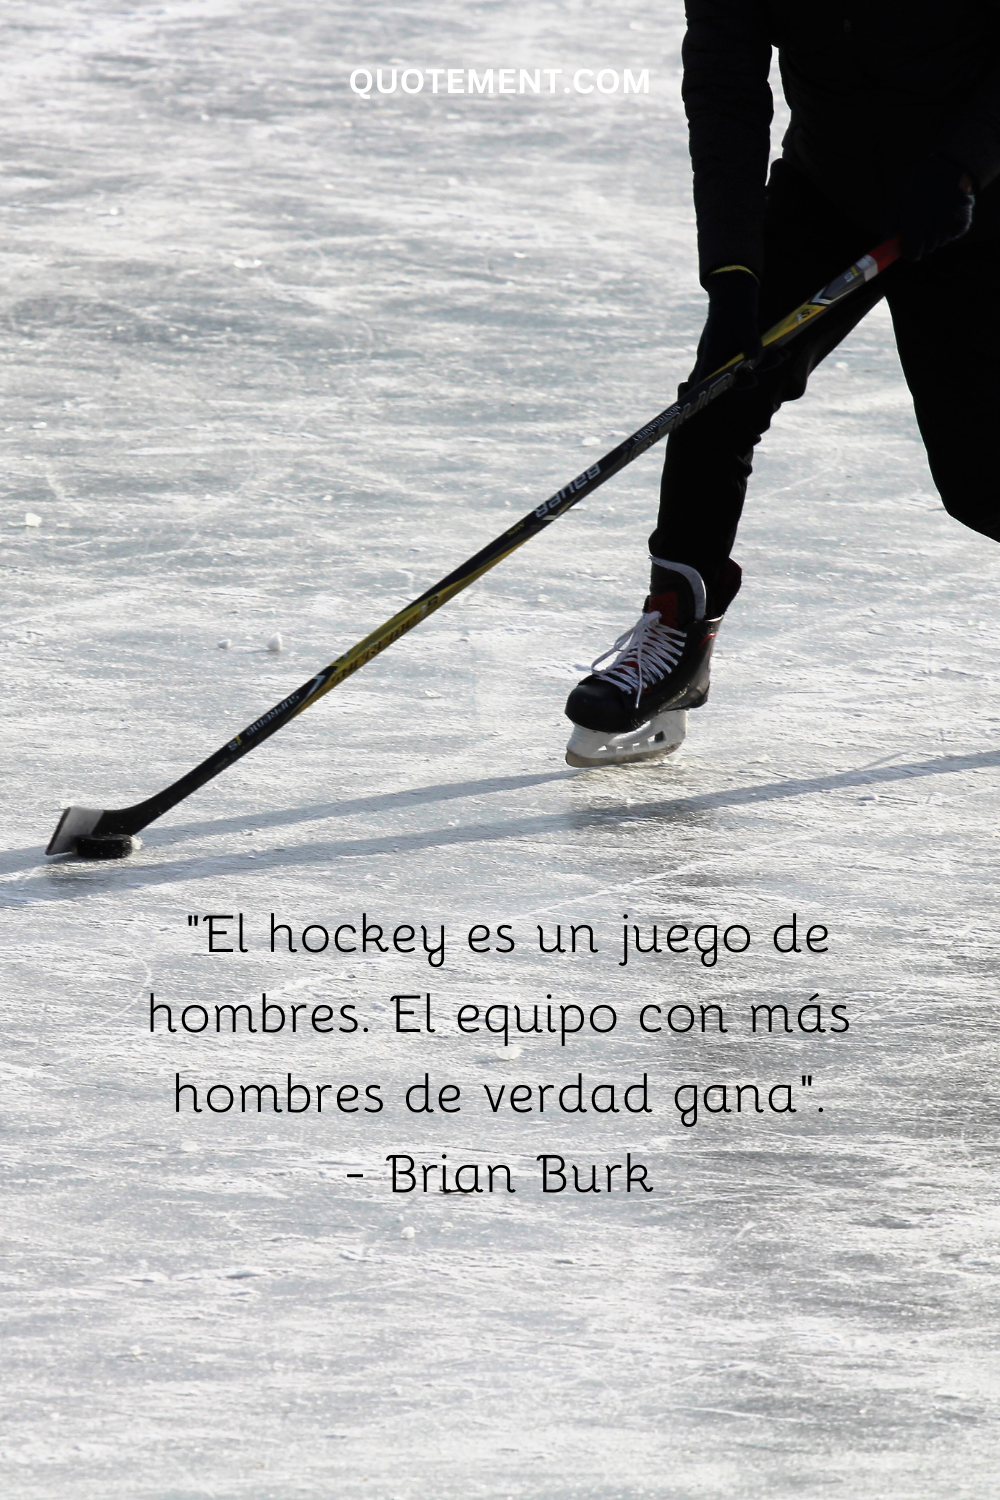 "El hockey es un juego de hombres. El equipo con más hombres de verdad gana". - Brian Burk